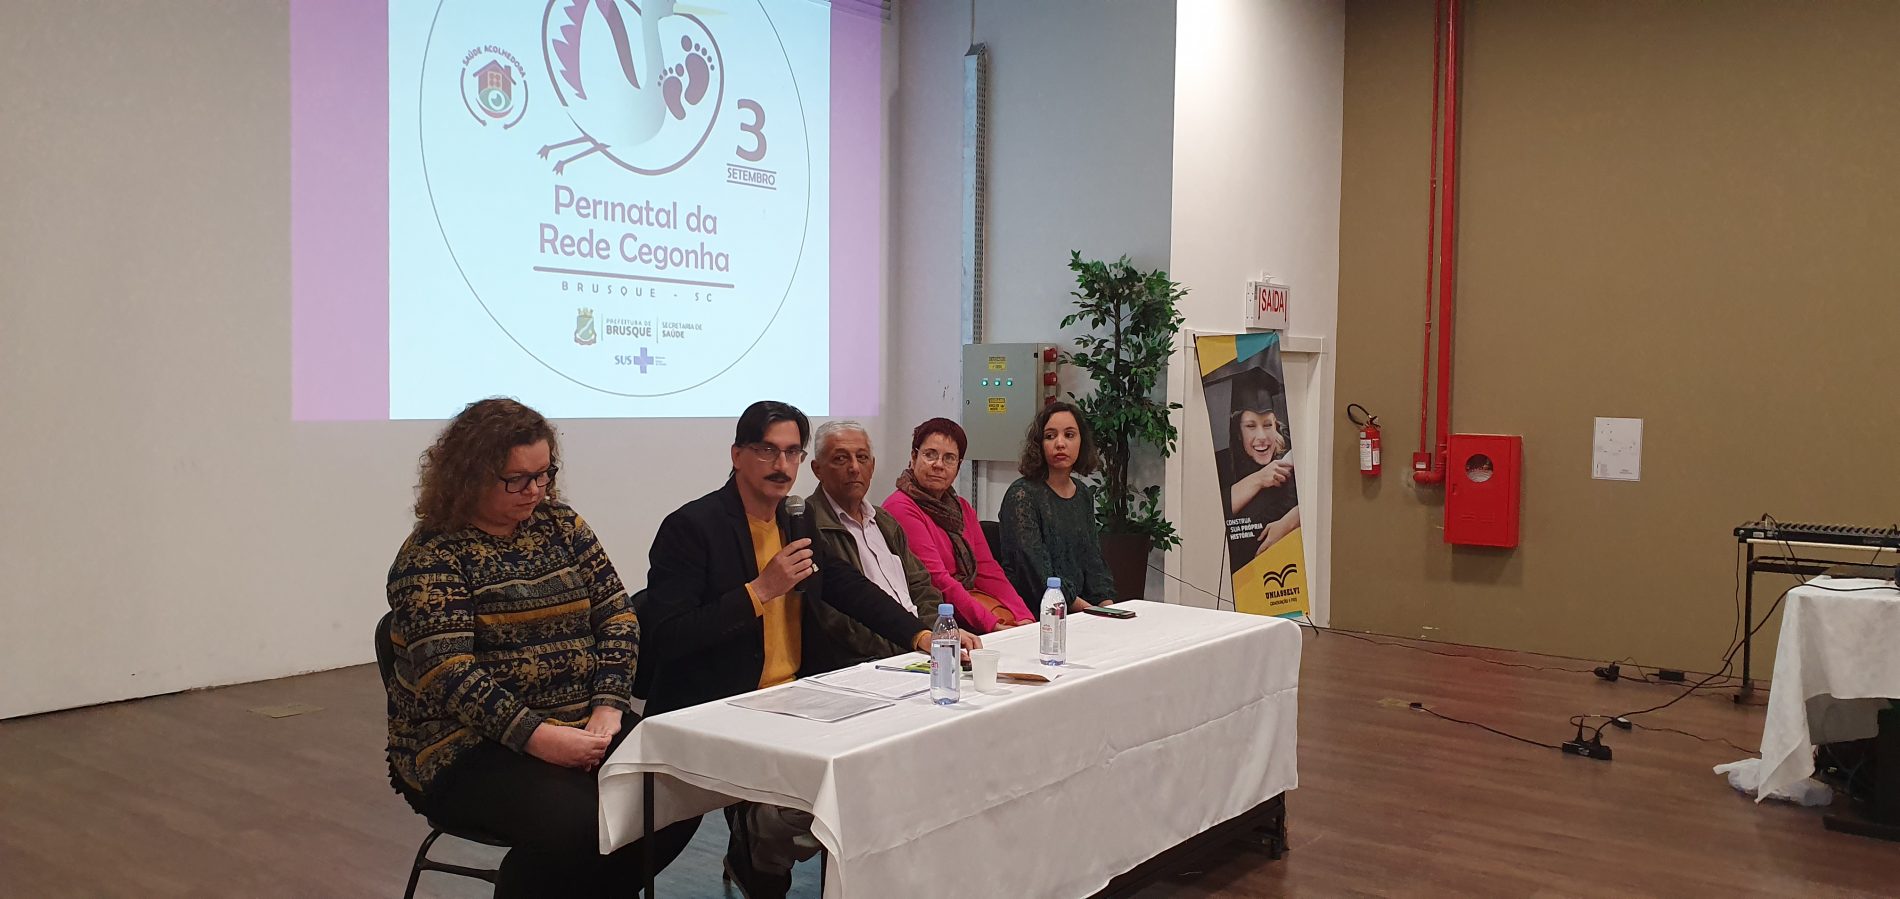 Fórum Perinatal realizado em Brusque, com profissionais da região da AMMVI, discutiu ações para ampliar o atendimento da rede cegonha